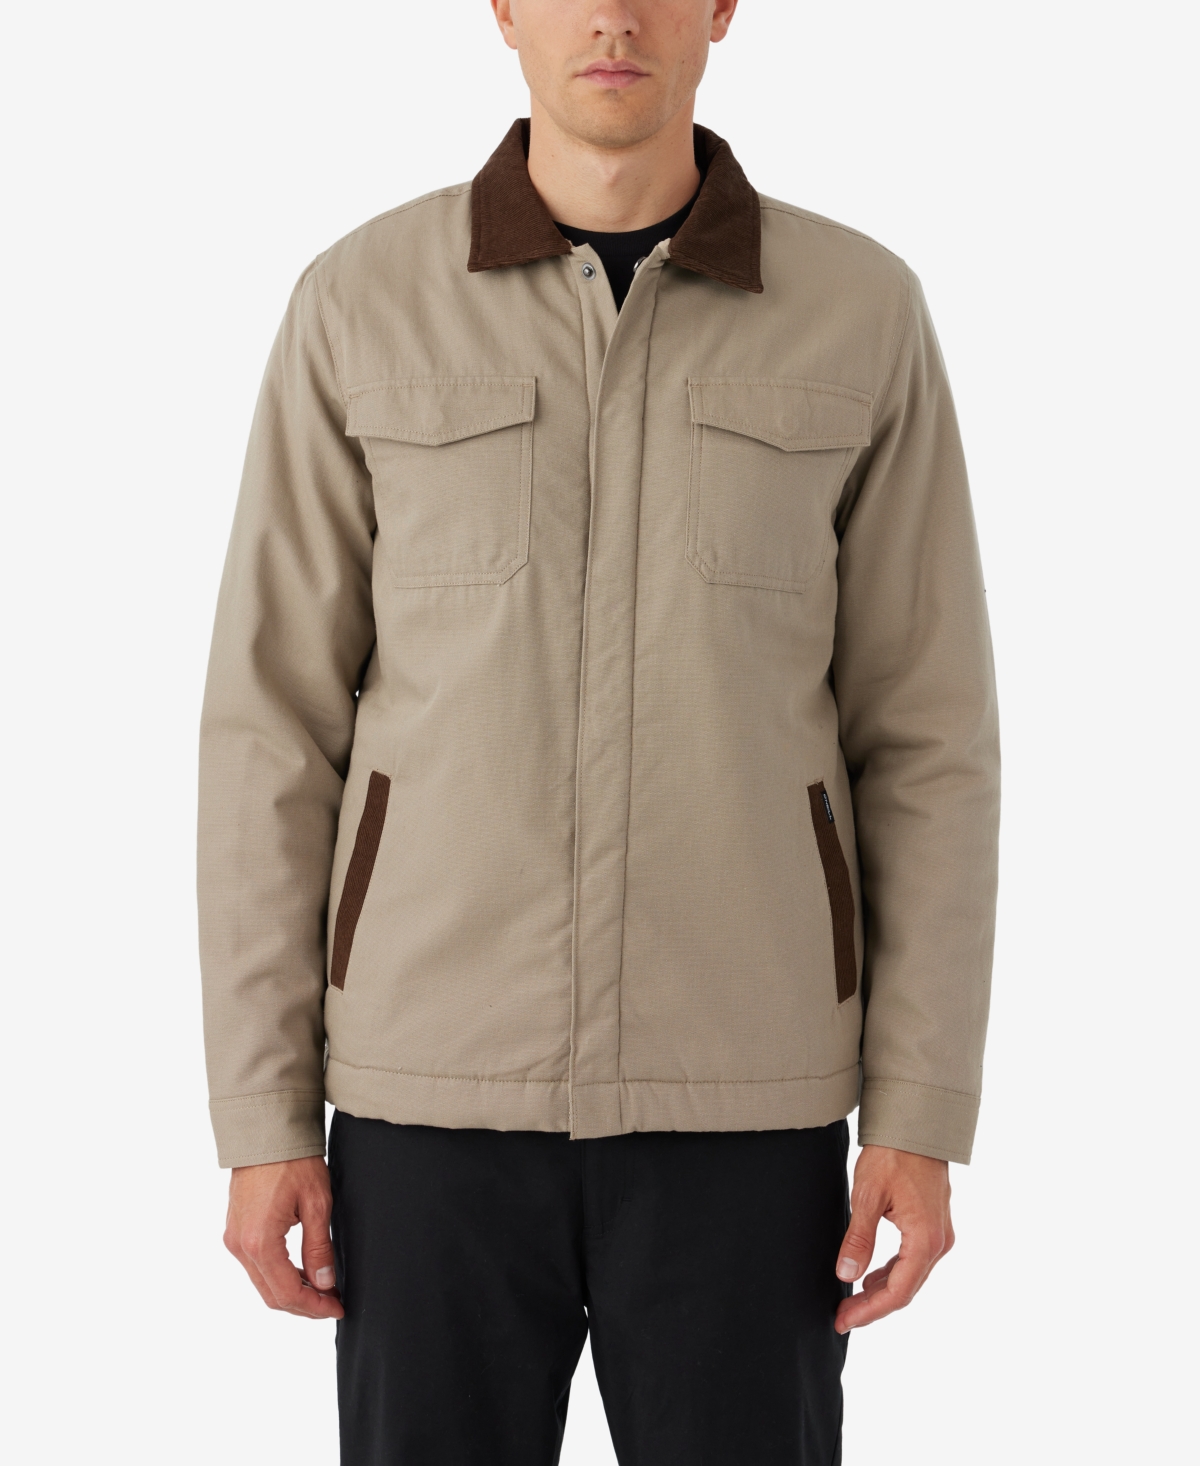 Men's Beacon Sherpa Lined Jacket - Khaki